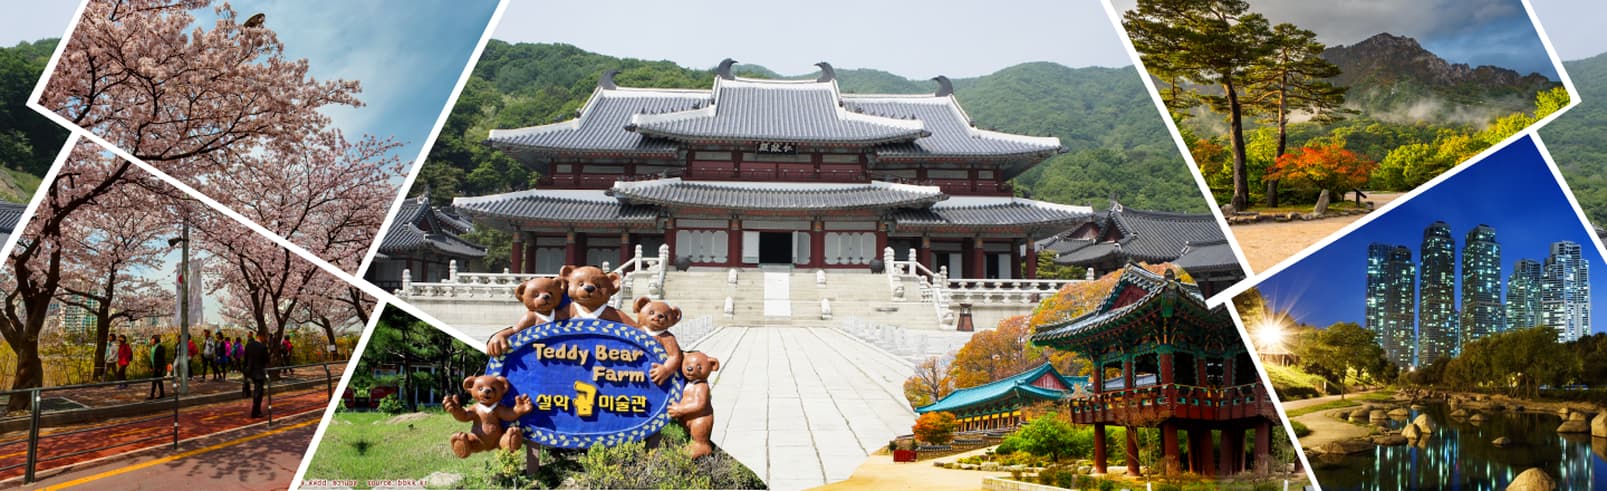 ทัวร์เกาหลี กรุงโซล  5 วัน 3 คืน (เมษายน เทศกาลชมดอกซากุระ “เกาะยออิโด”) บิน LJ